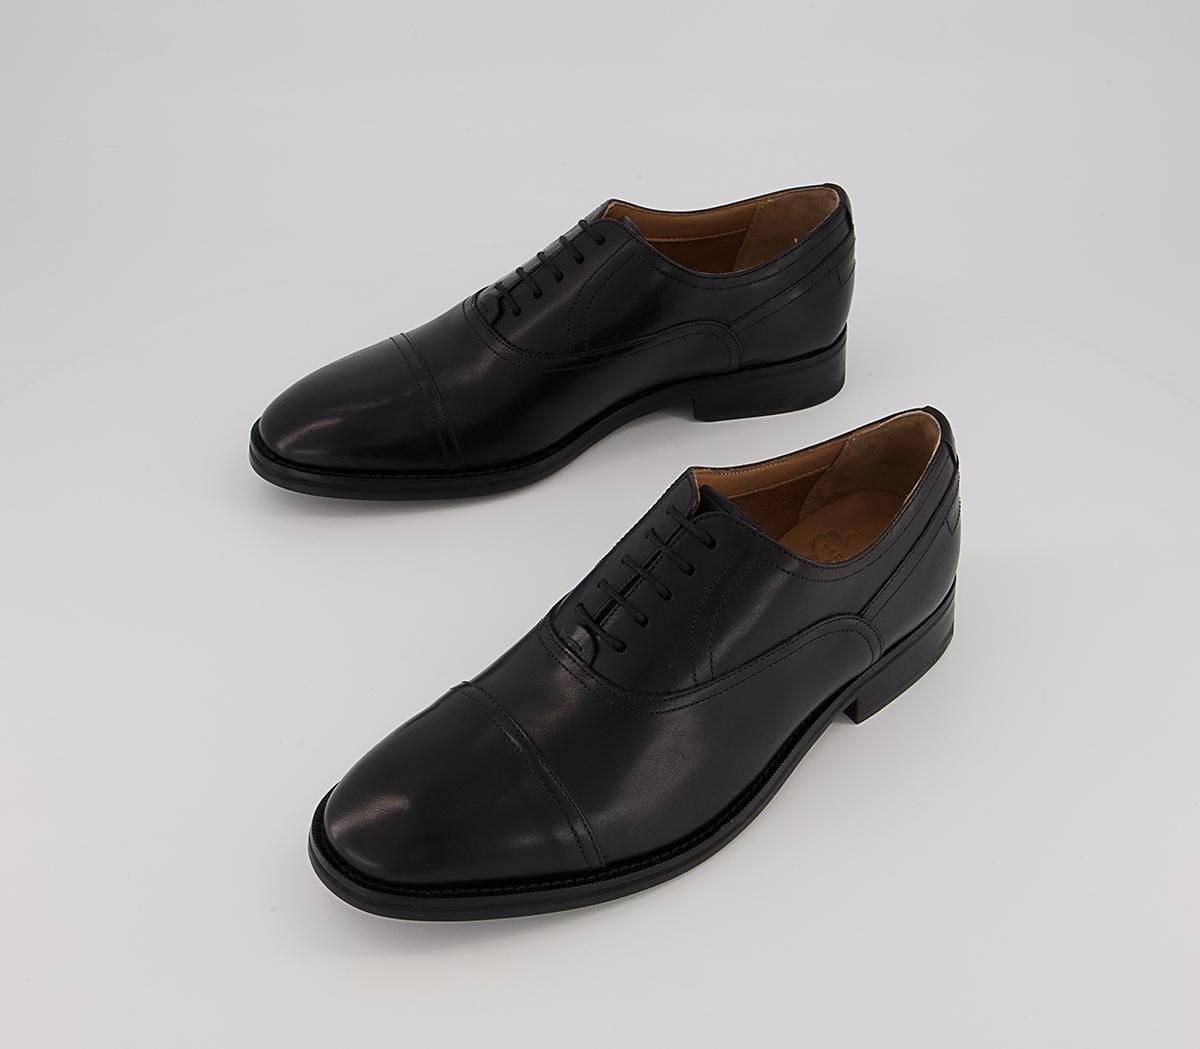 Ted Baker Carlen Oxford Shoes Black - Men’s Smart Shoes